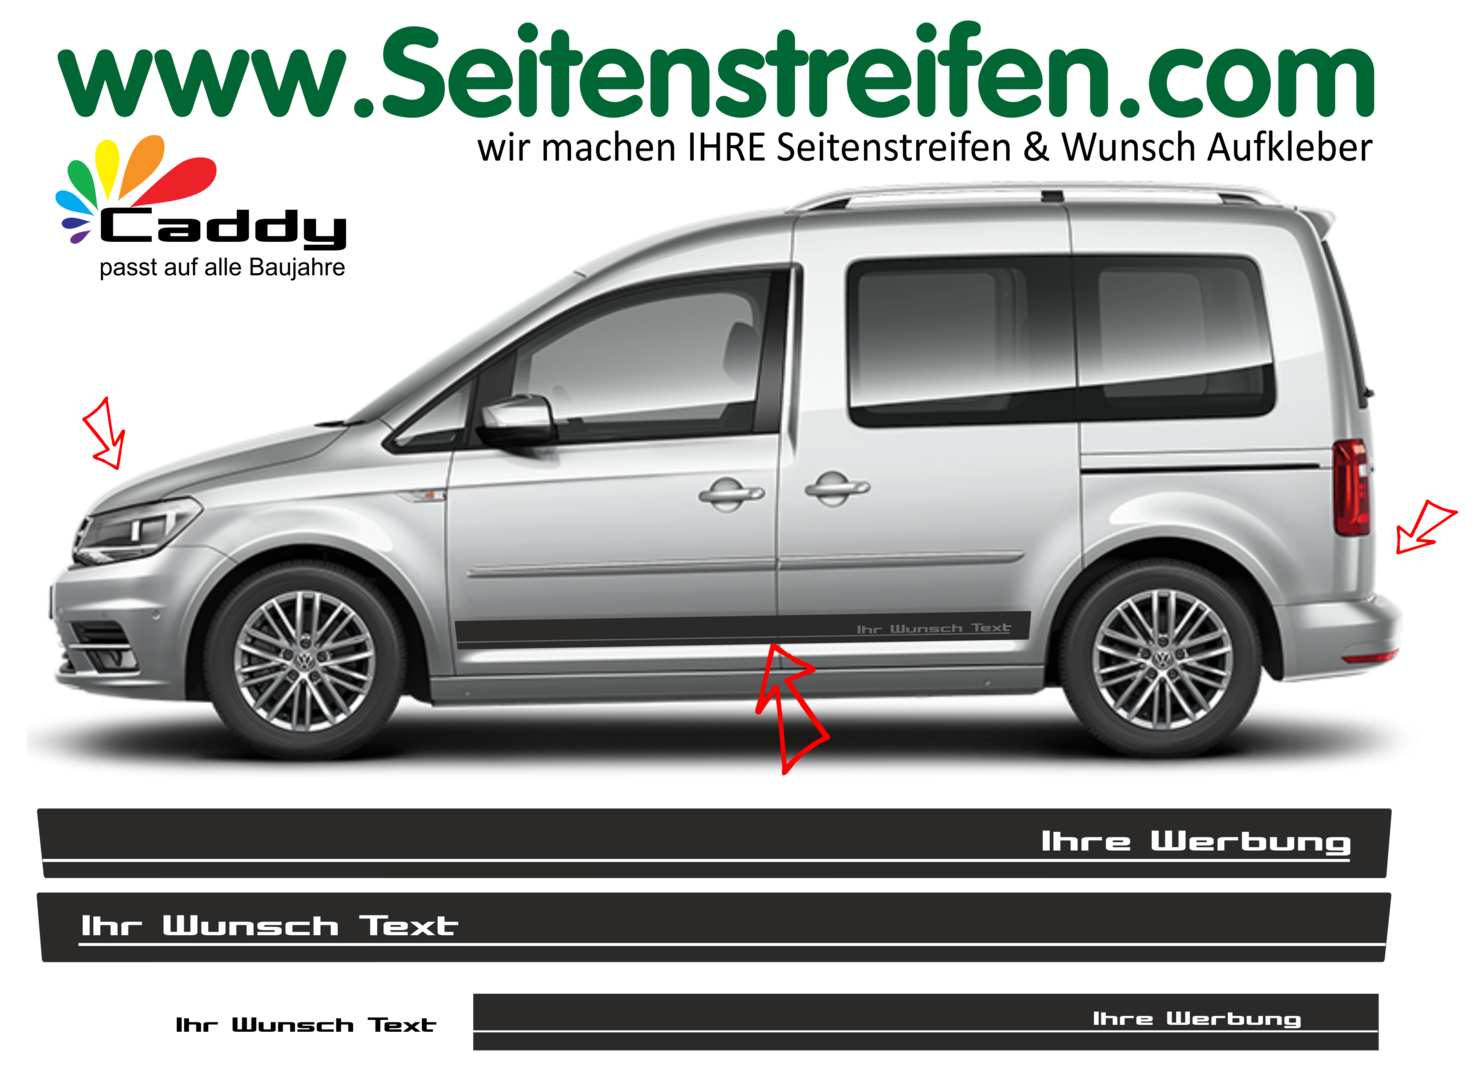 VW Caddy - Testo desiderato / la tua pubblicità adesivi strisce laterali adesive auto sticker - 1076